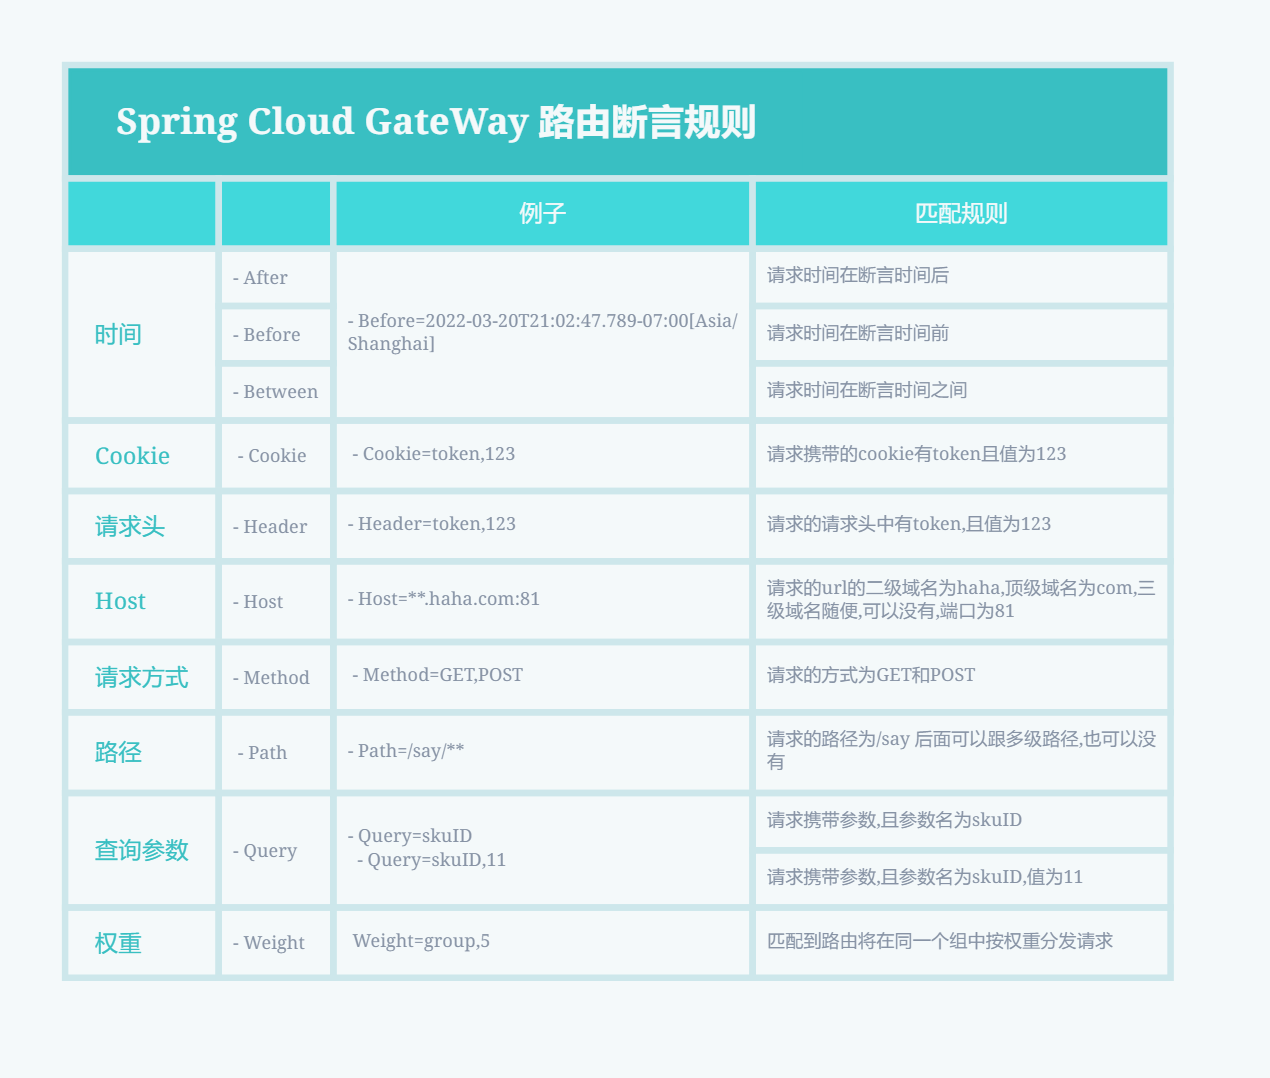 Reglas de aserción de enrutamiento de Spring Cloud GateWay